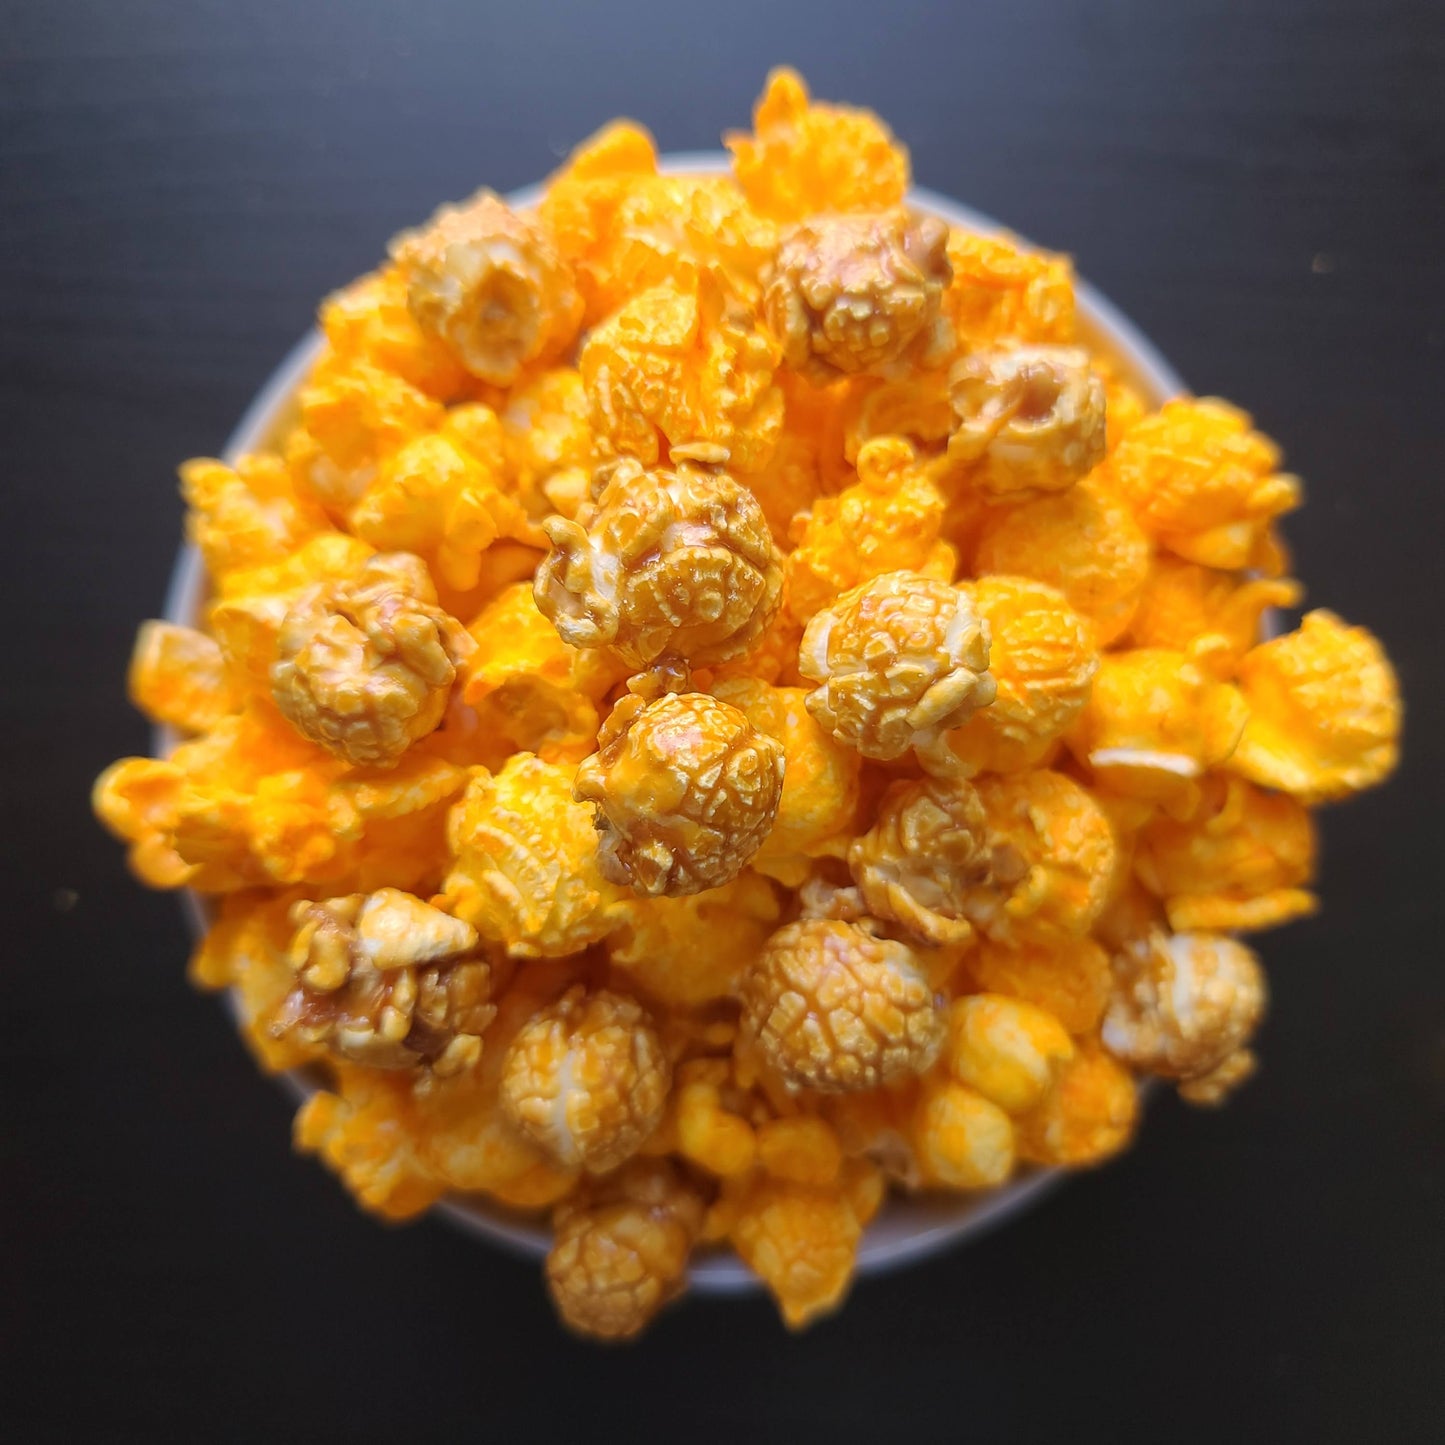 Eastminster Child Development Center - Cravings Gourmet Popcorn